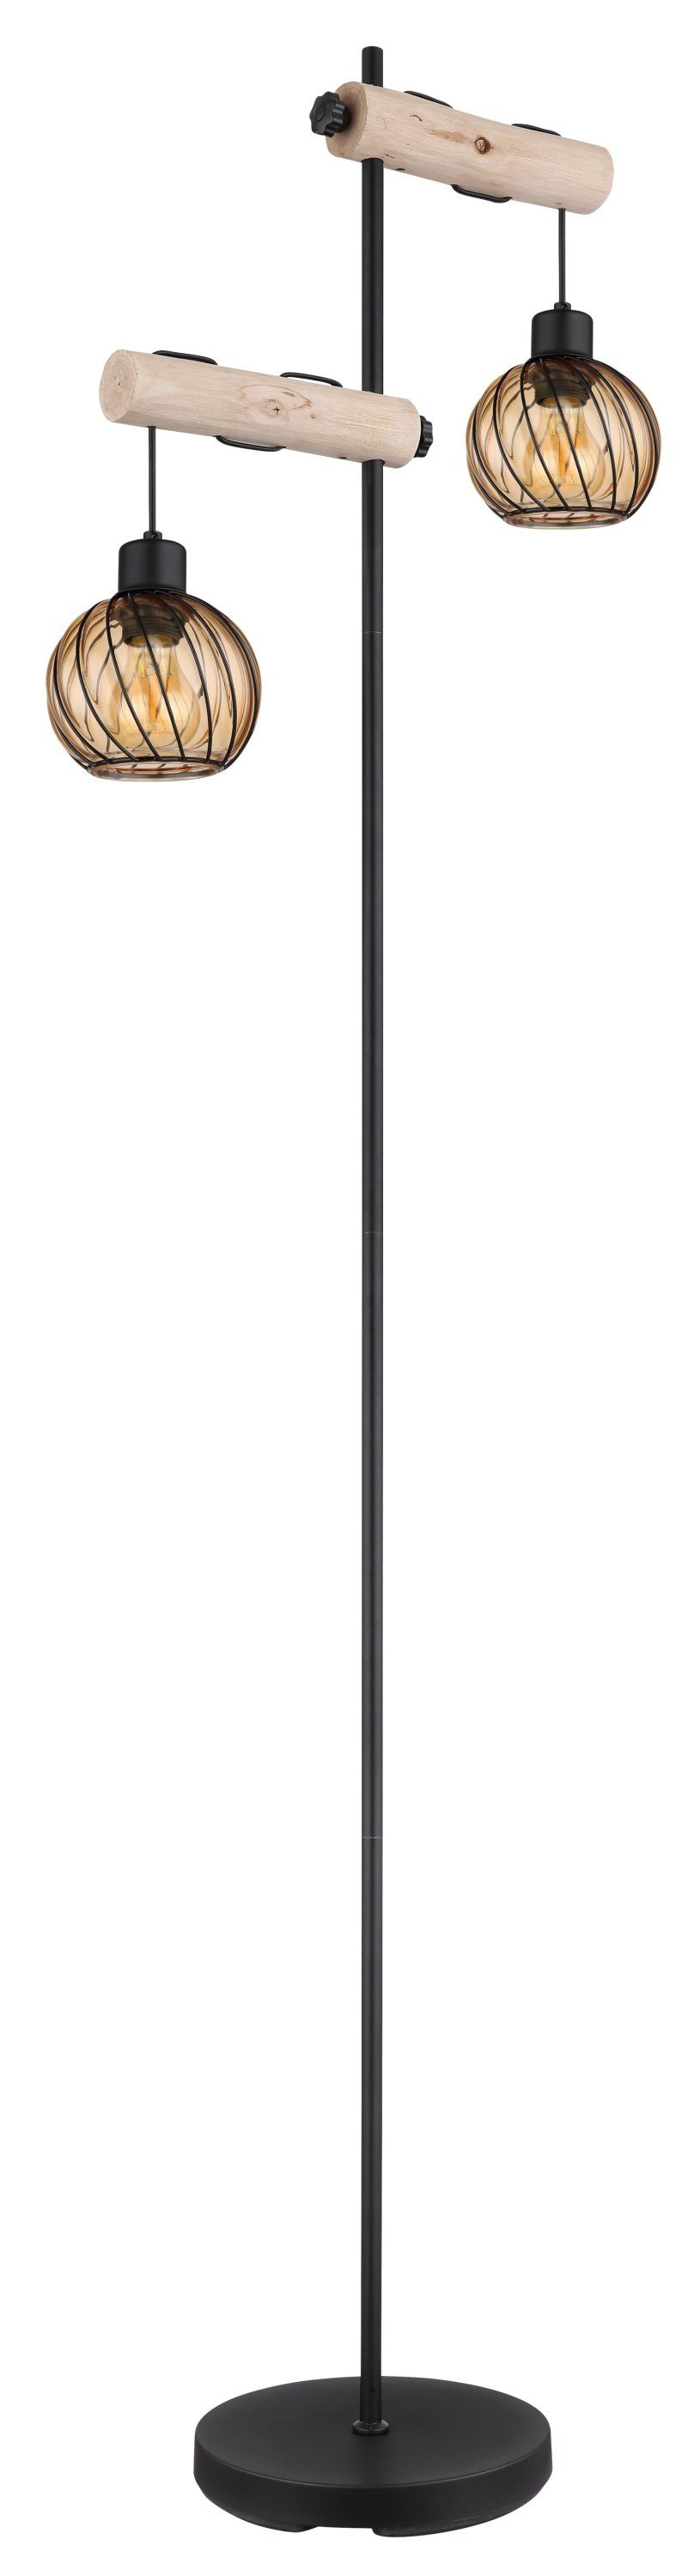 GLOBO LEUCHTEN Stehlampe Stehleuchte, GLOBO Lighting Stehleuchte PAULO (LBH 48x25x168 cm) LBH 48x25x168 cm